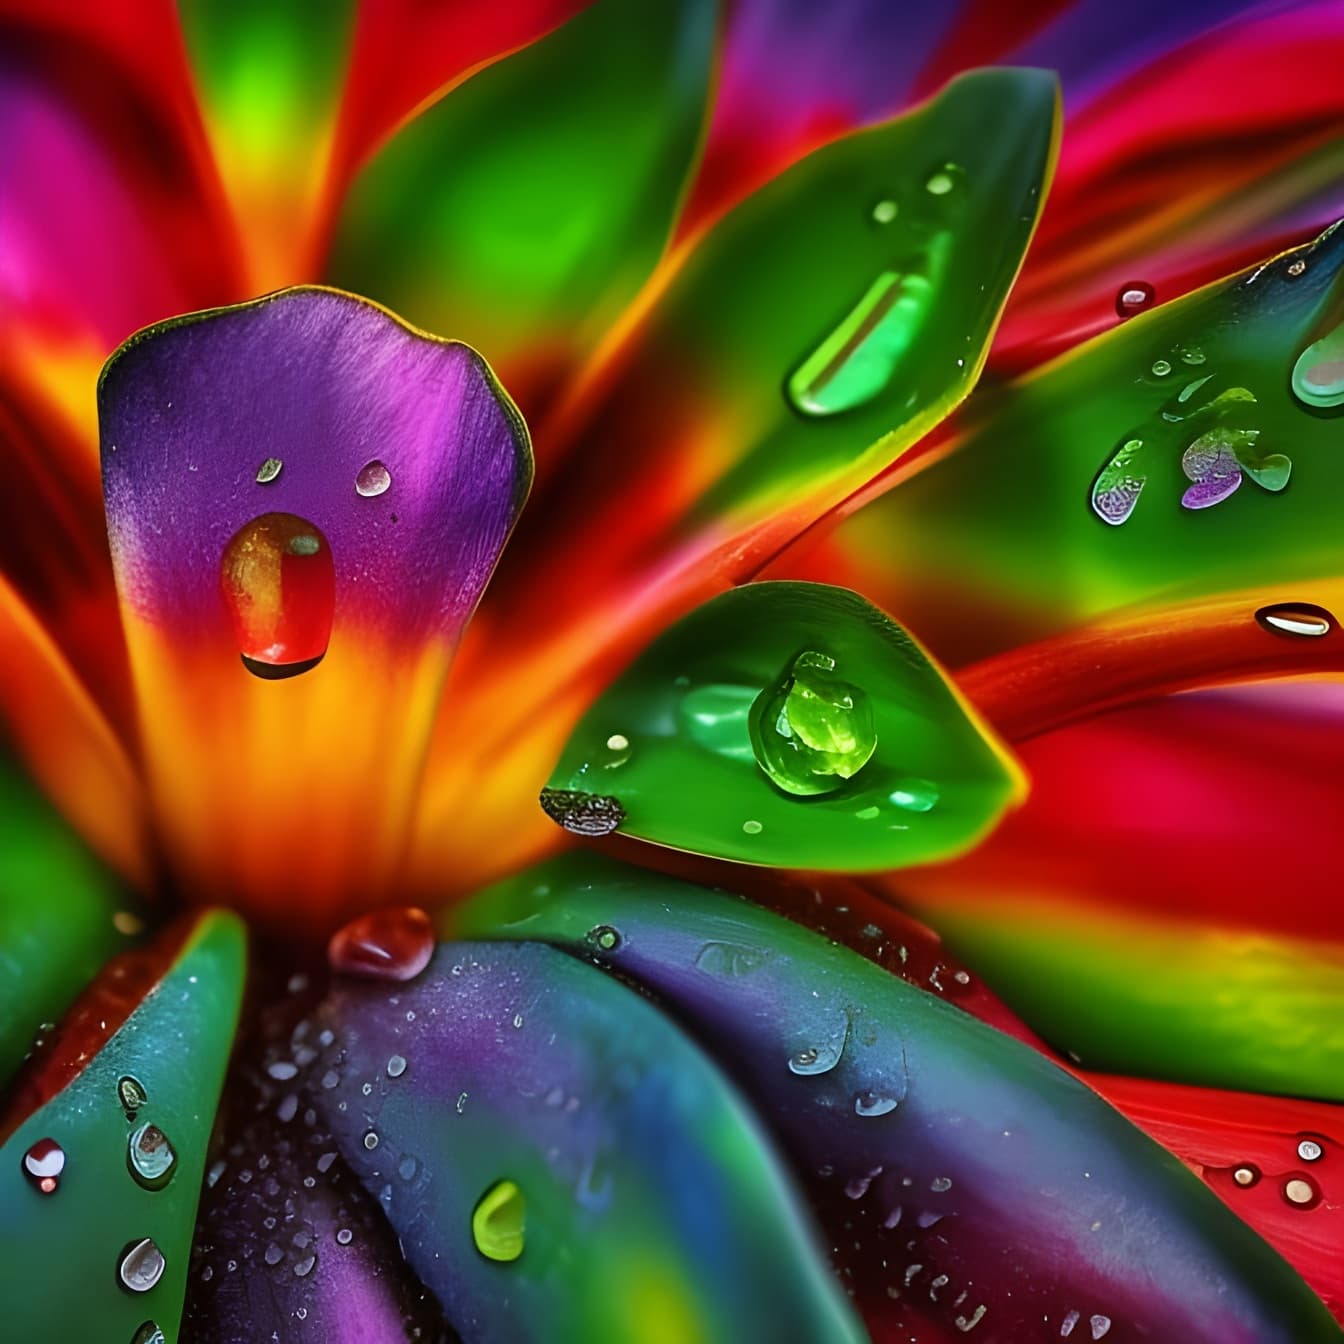 Levendige regenboogbloemblaadjes met waterdruppels – kunst met kunstmatige intelligentie